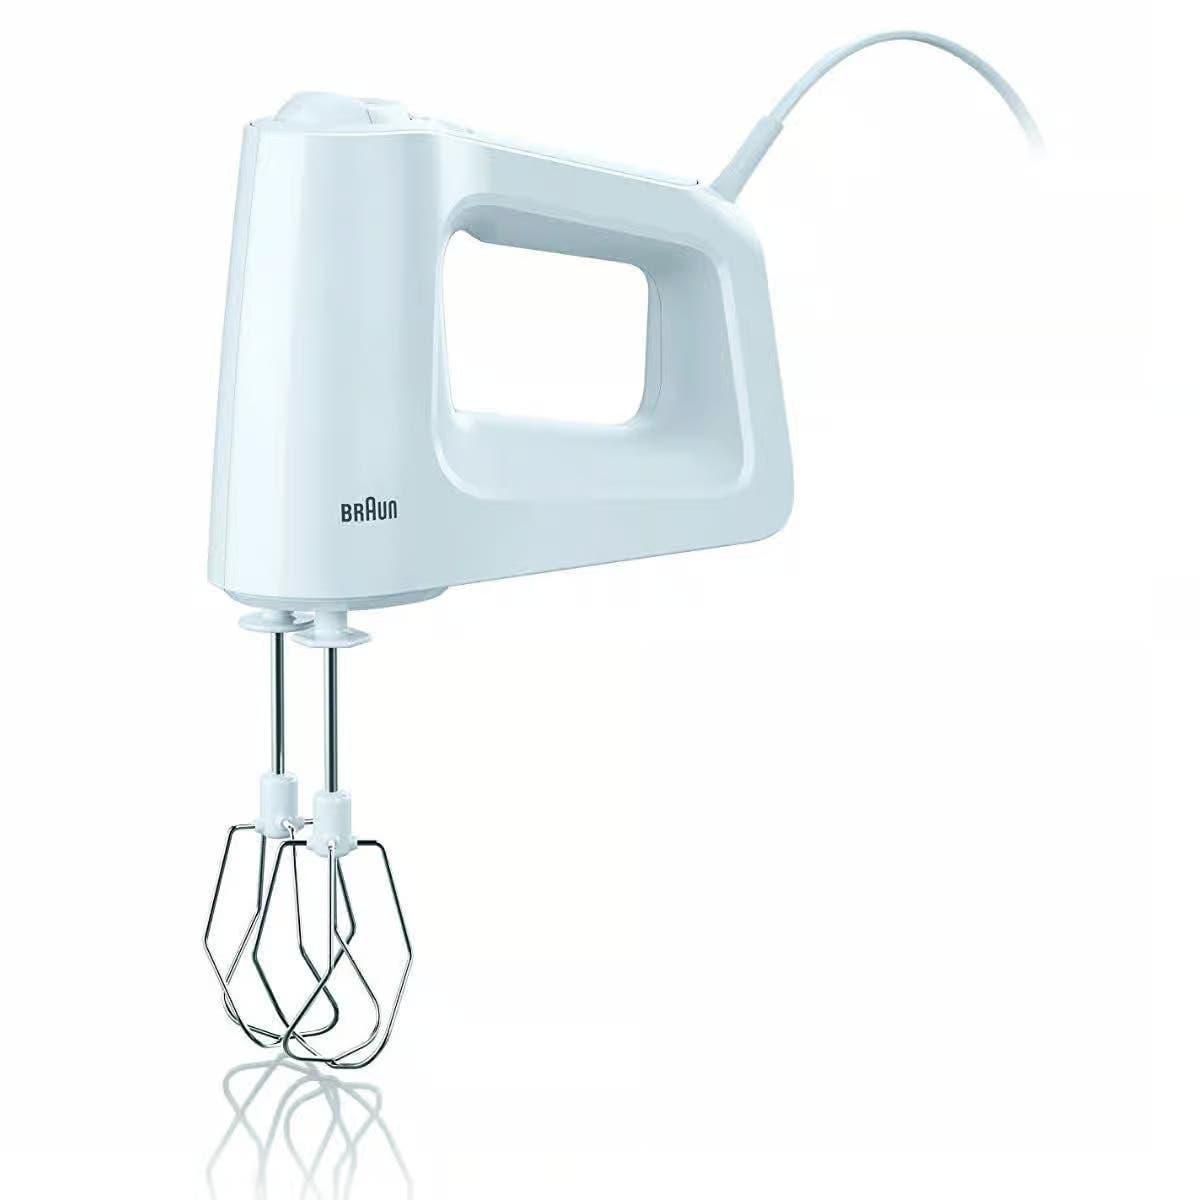 Get Braun Hand Mixer, 450 Watt, HM3000 - White with best offers | Raneen.com